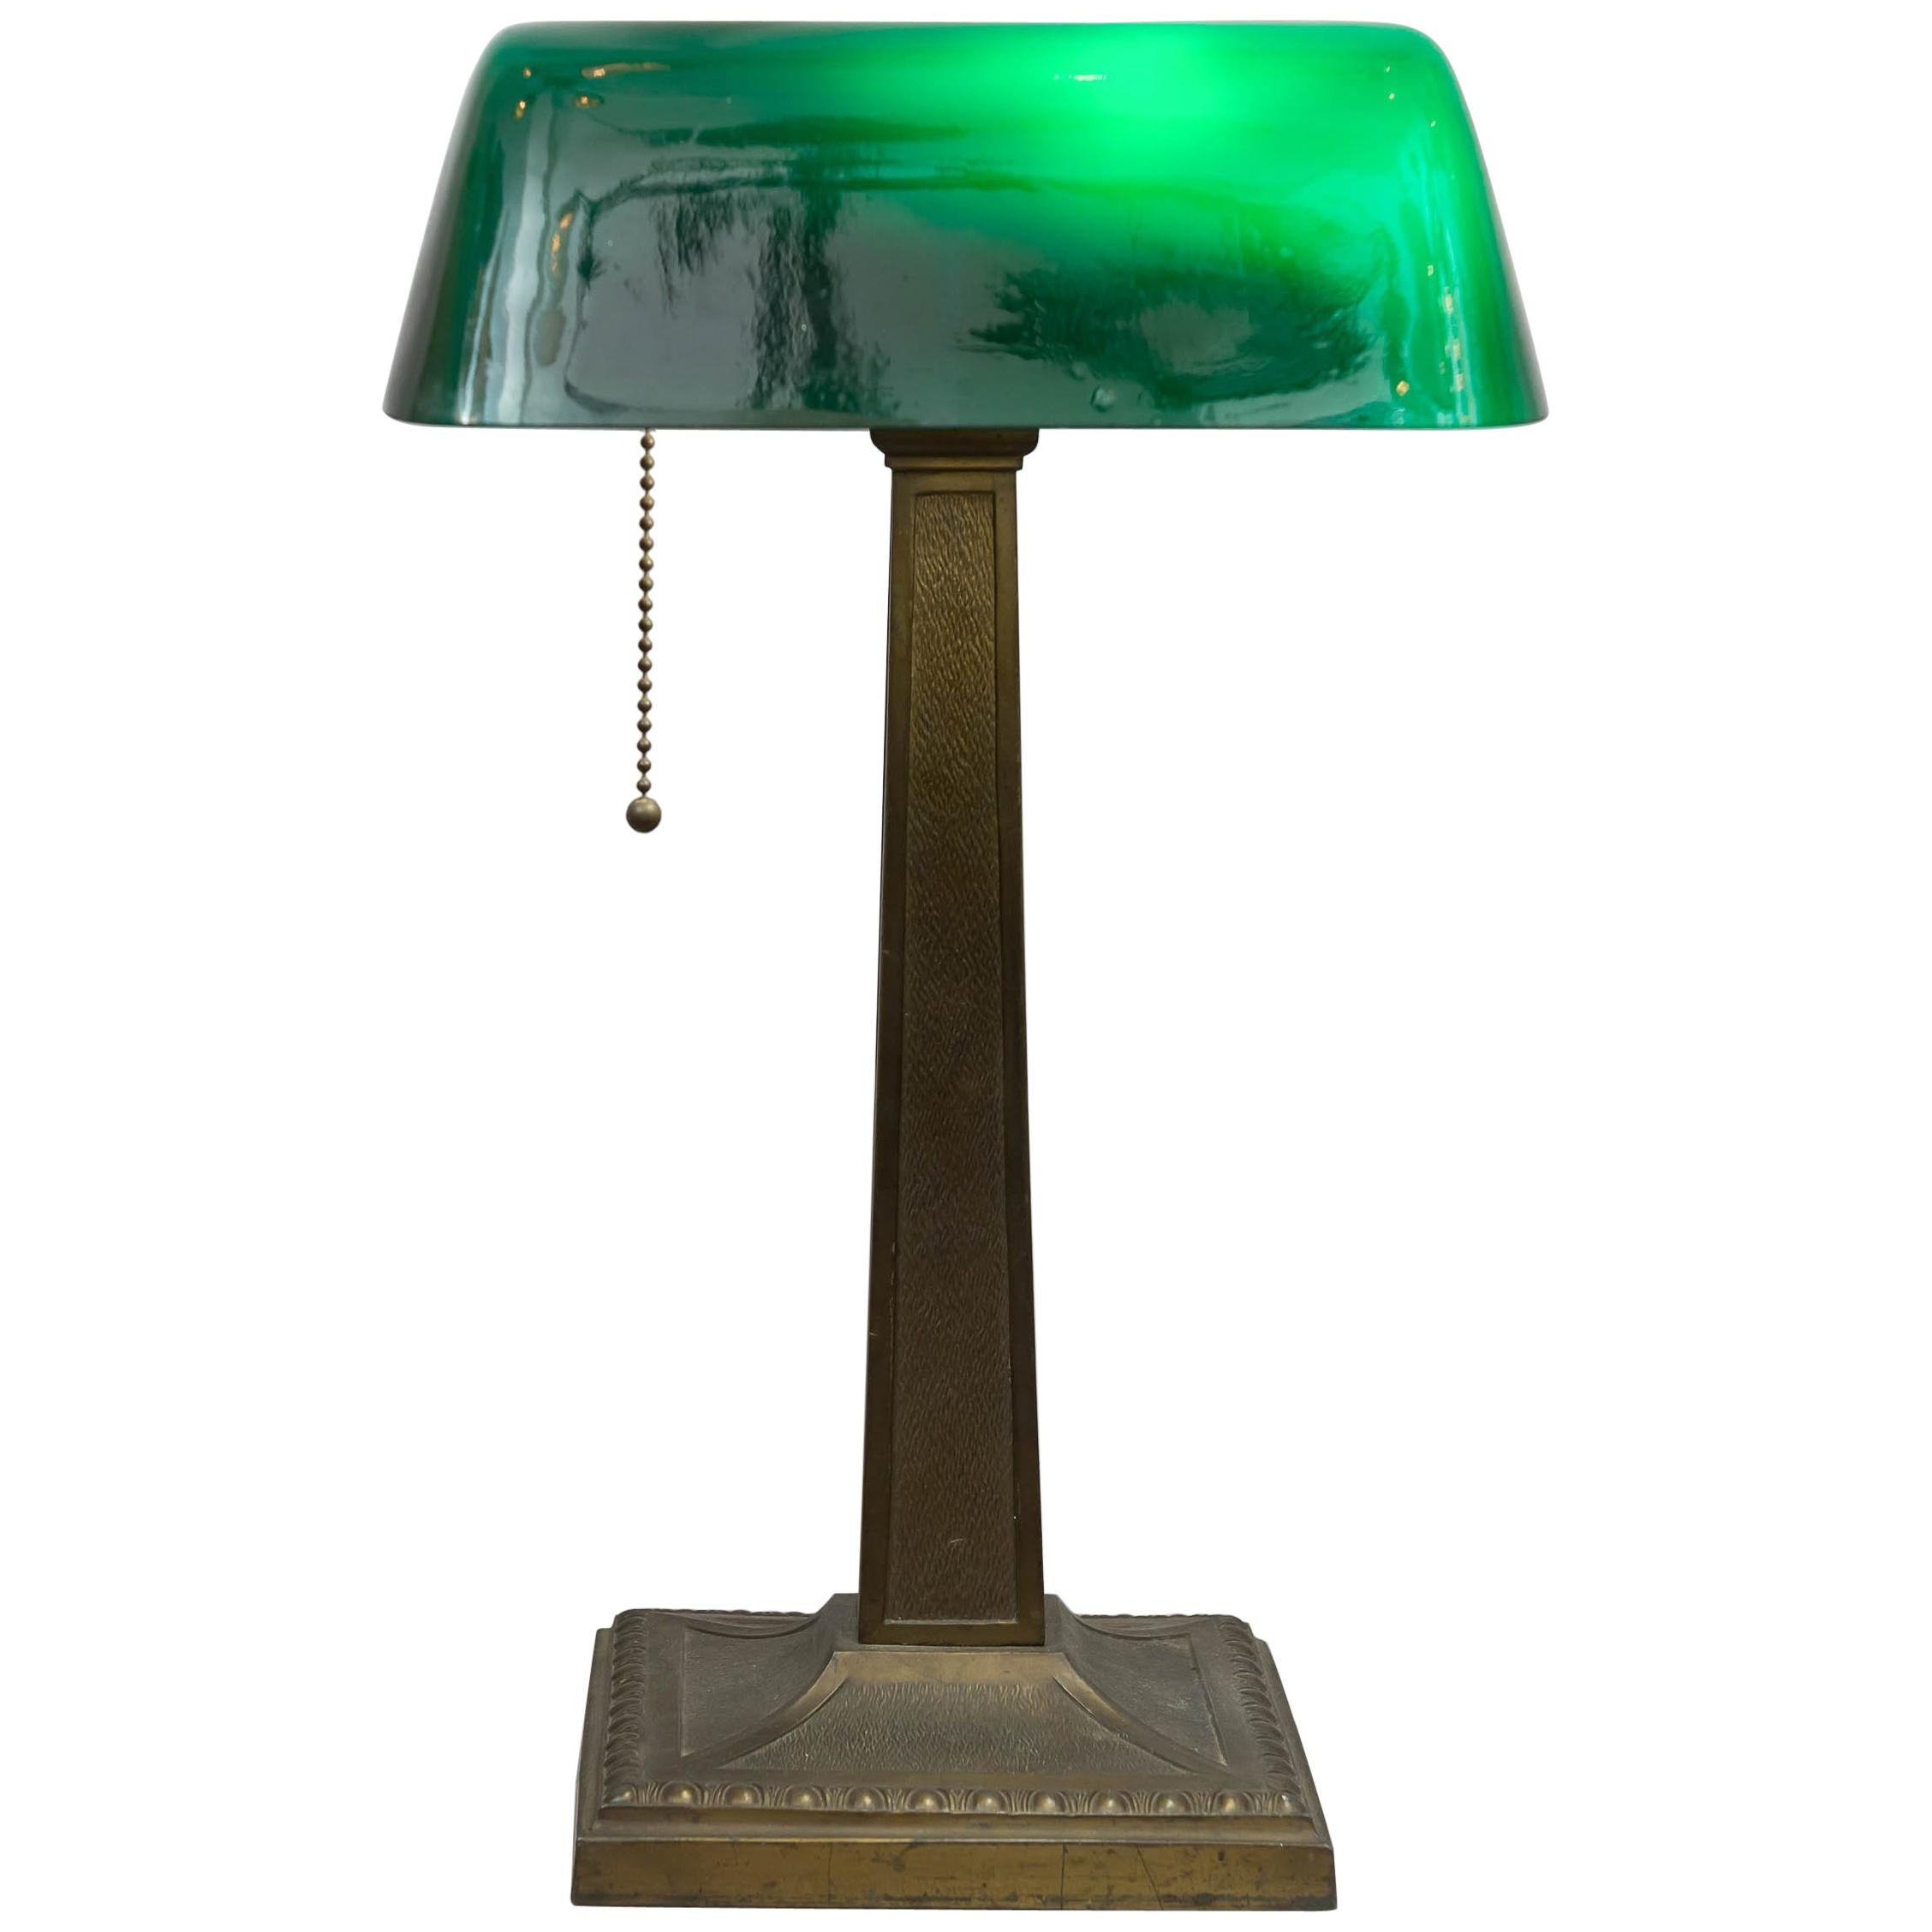 Antique lampe de banquier à abat-jour vert:: signée Amronlite